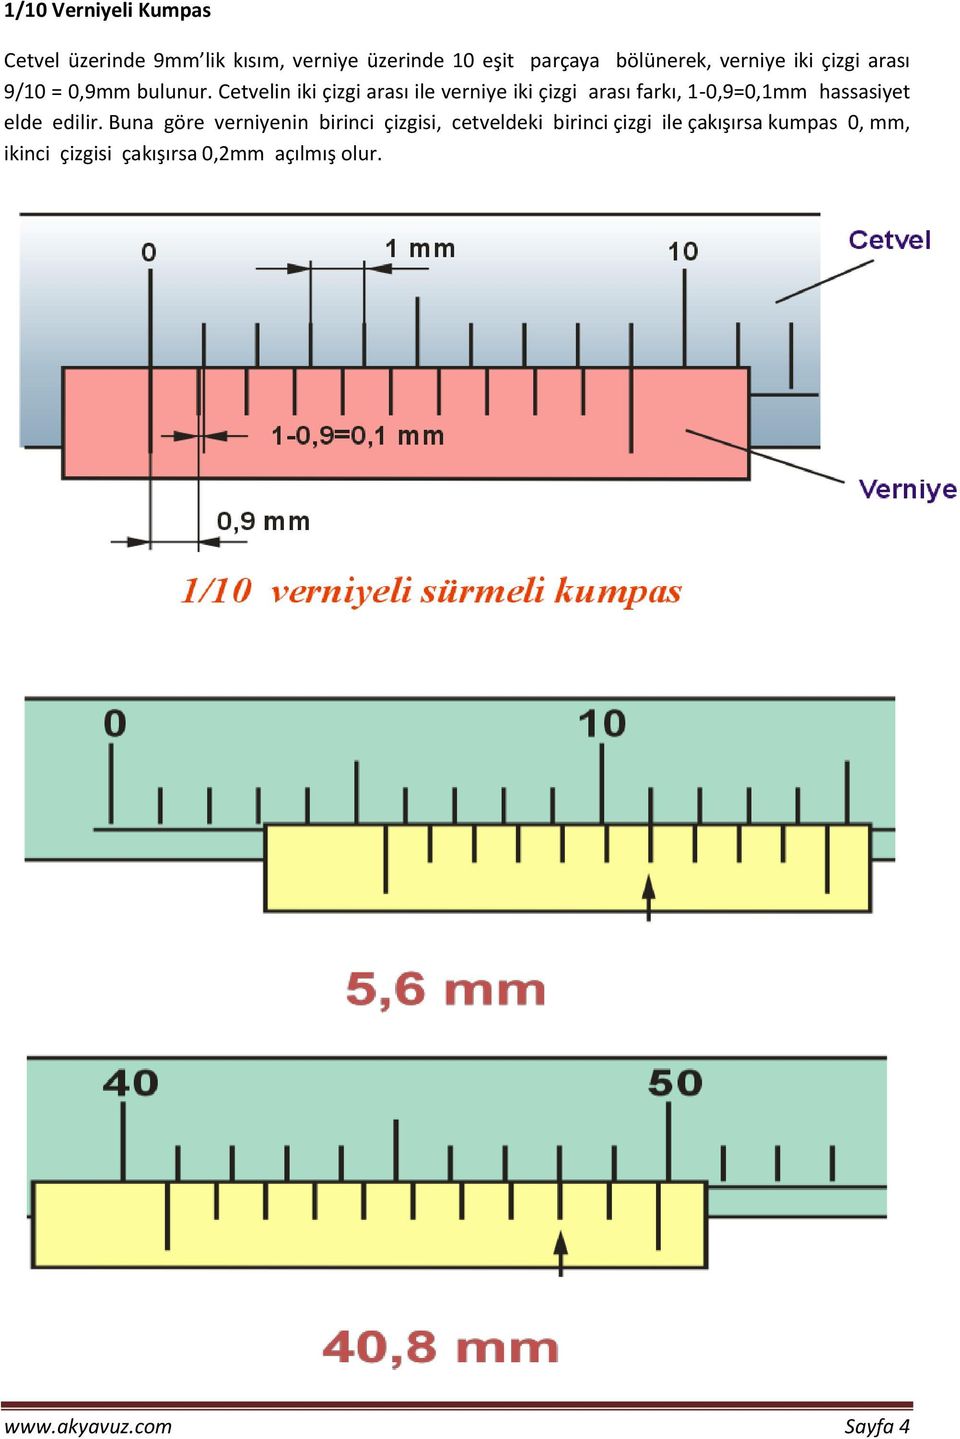 Cetvelin iki çizgi arası ile verniye iki çizgi arası farkı, 1-0,9=0,1mm hassasiyet elde edilir.